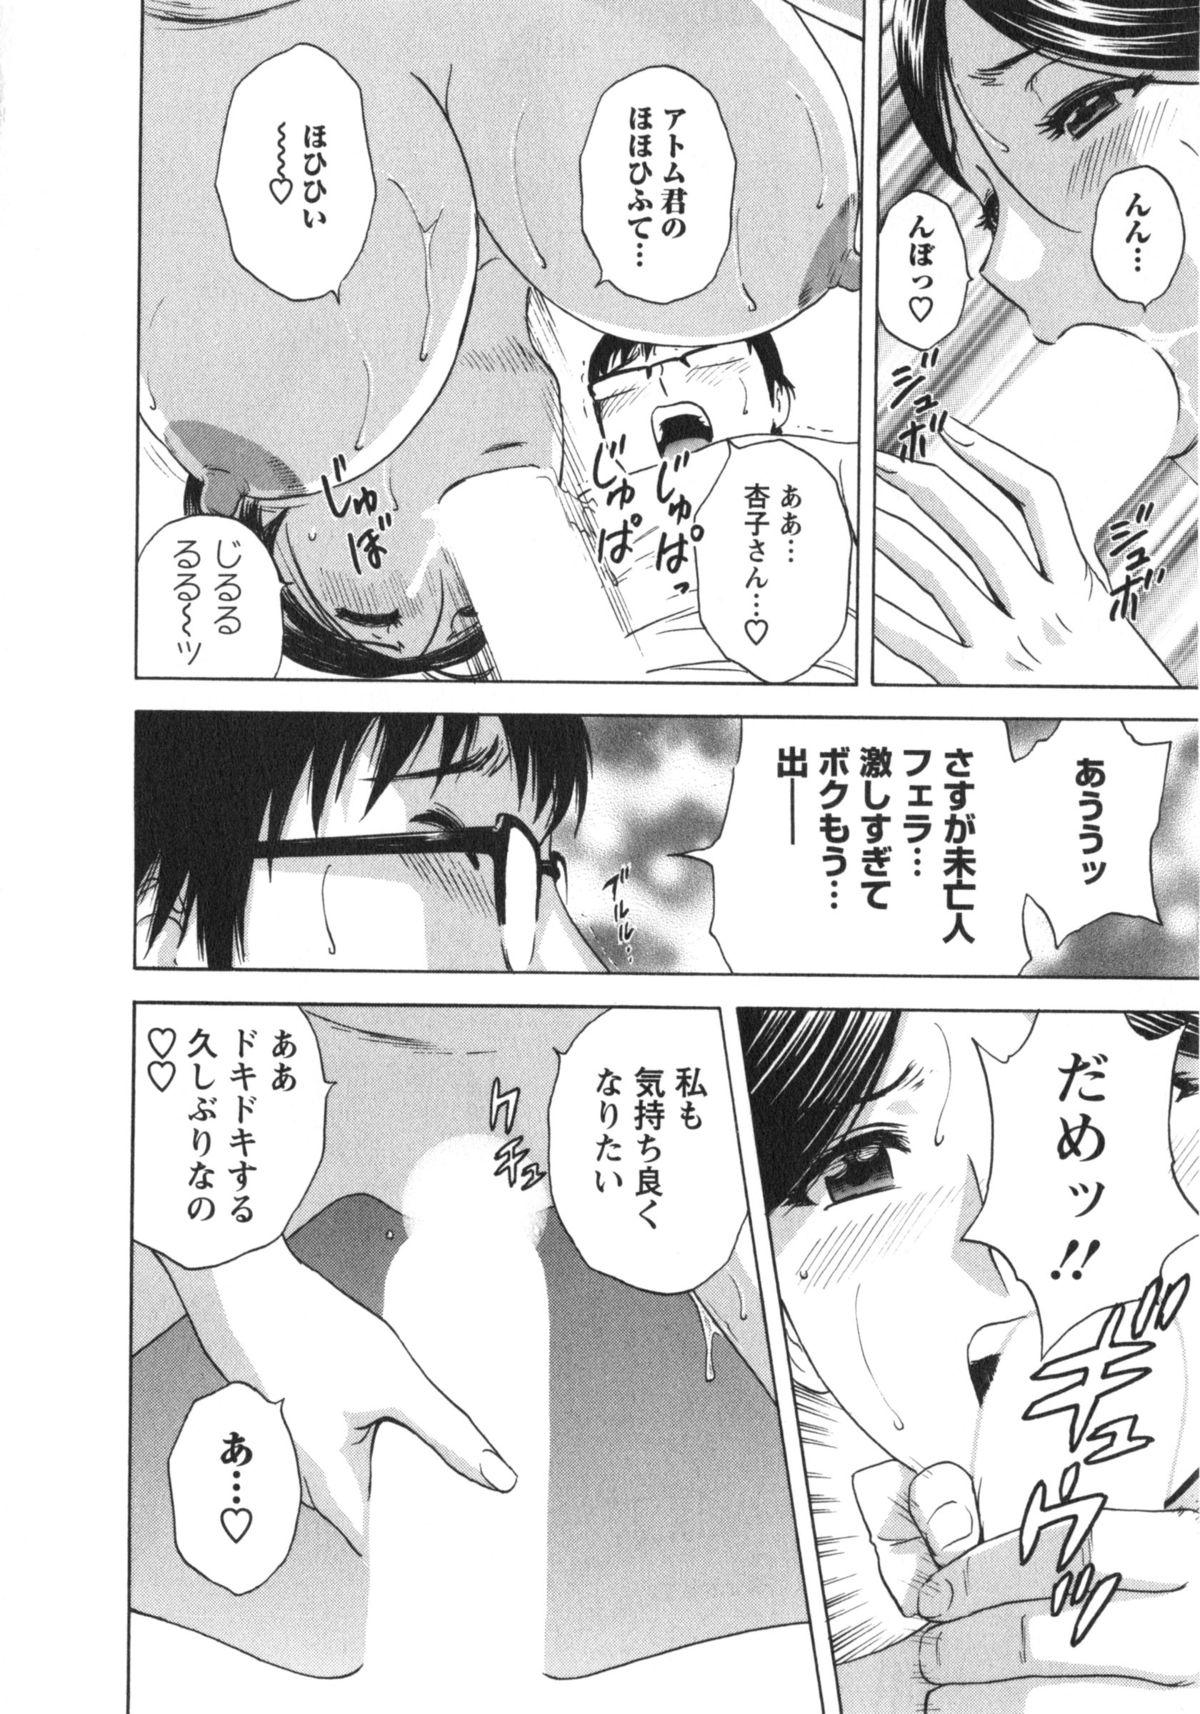 Manga no youna Hitozuma to no Hibi - Days with Married Women such as Comics. 76